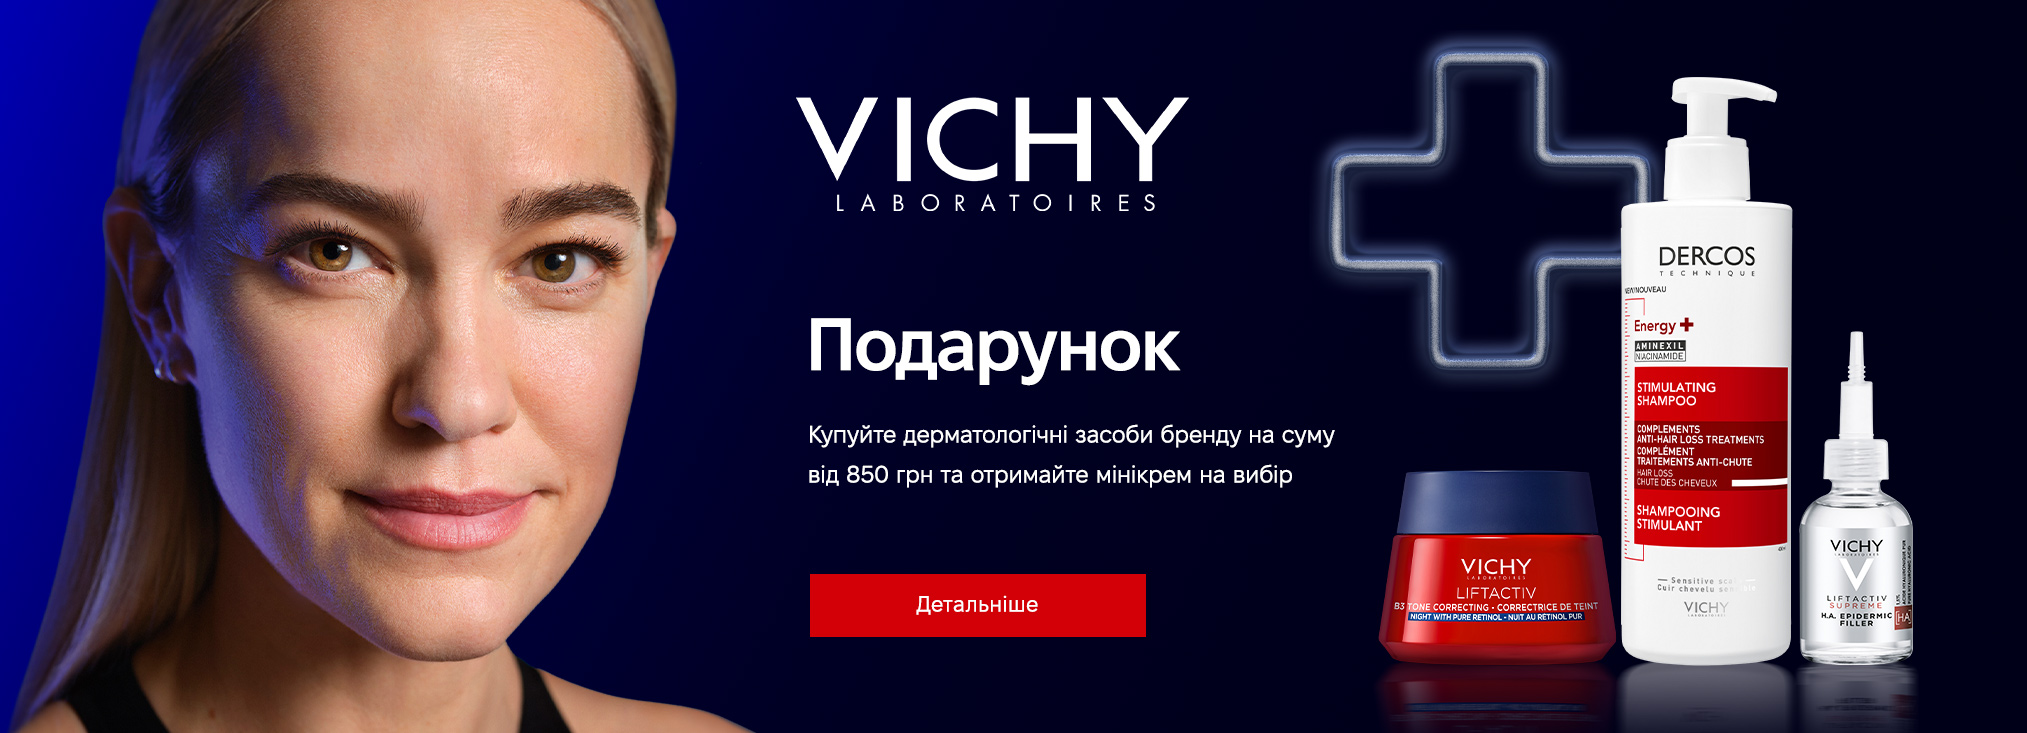 Vichy_321073